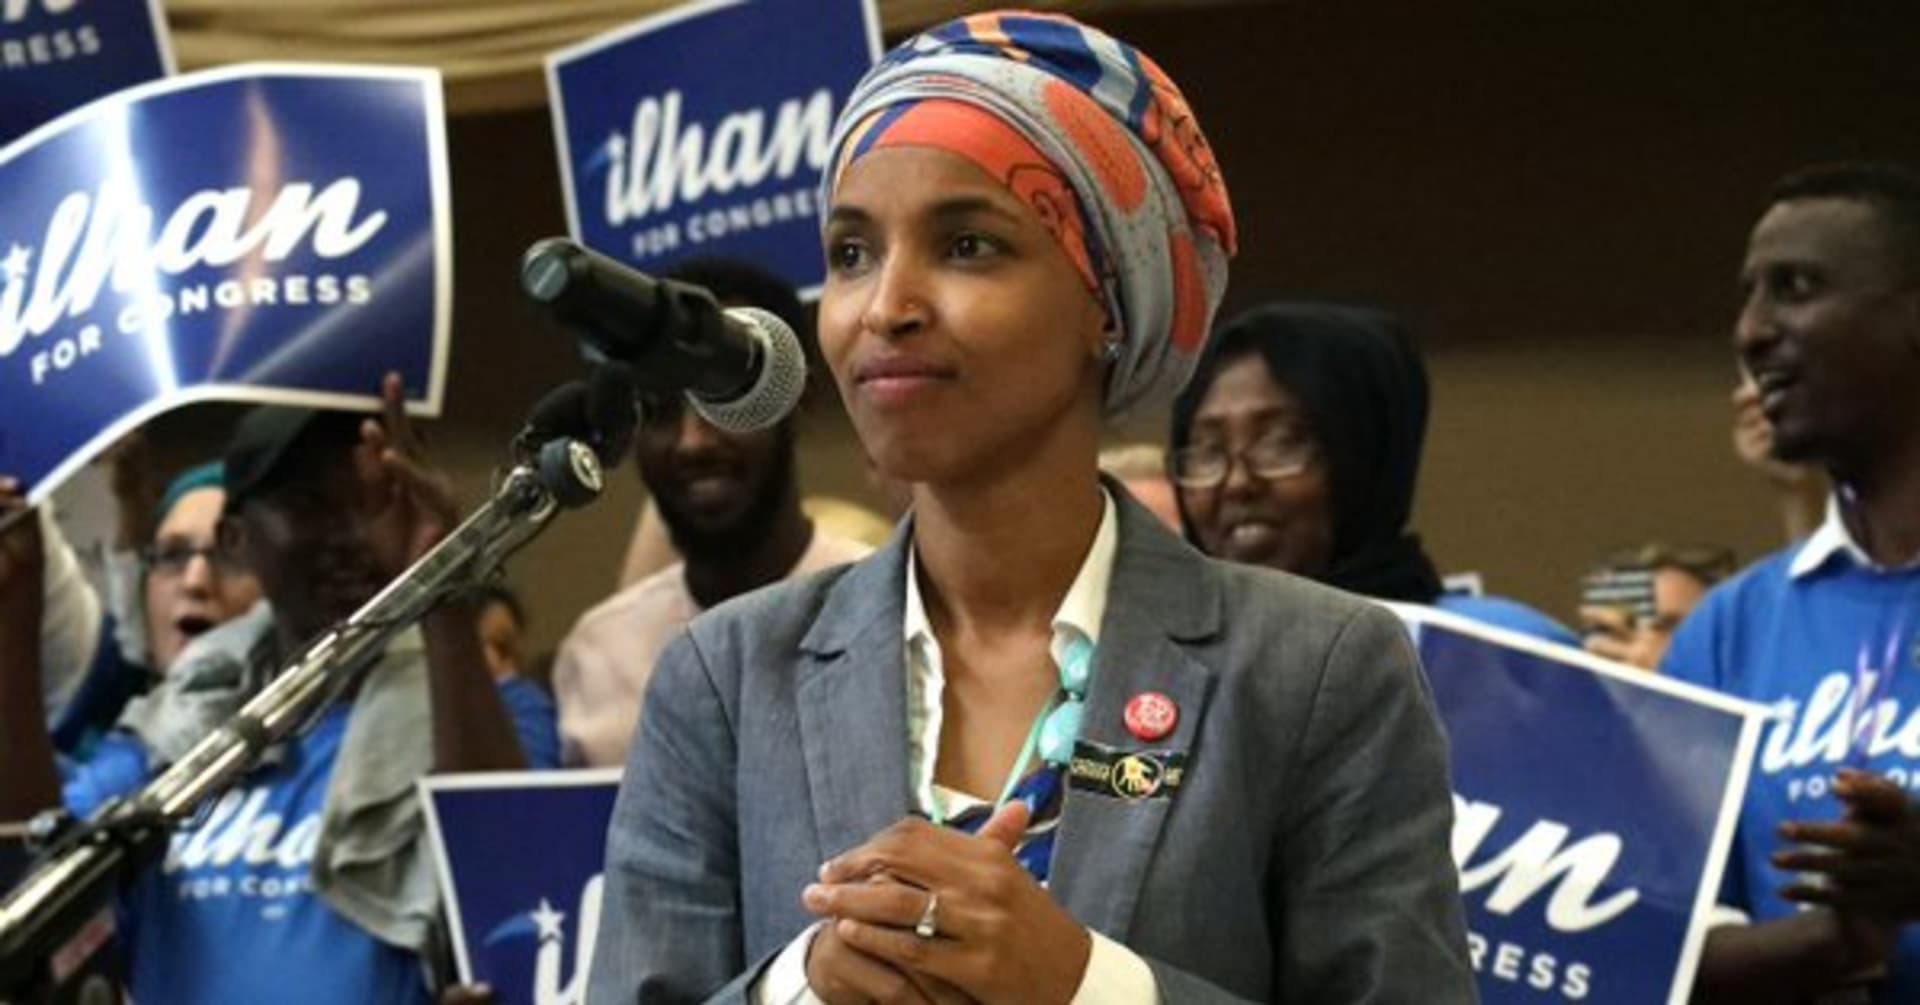 Ilhan Omarová je jednou ze dvou muslimek, které jako první ženy svého vyznání usednou v americkém Kongresu